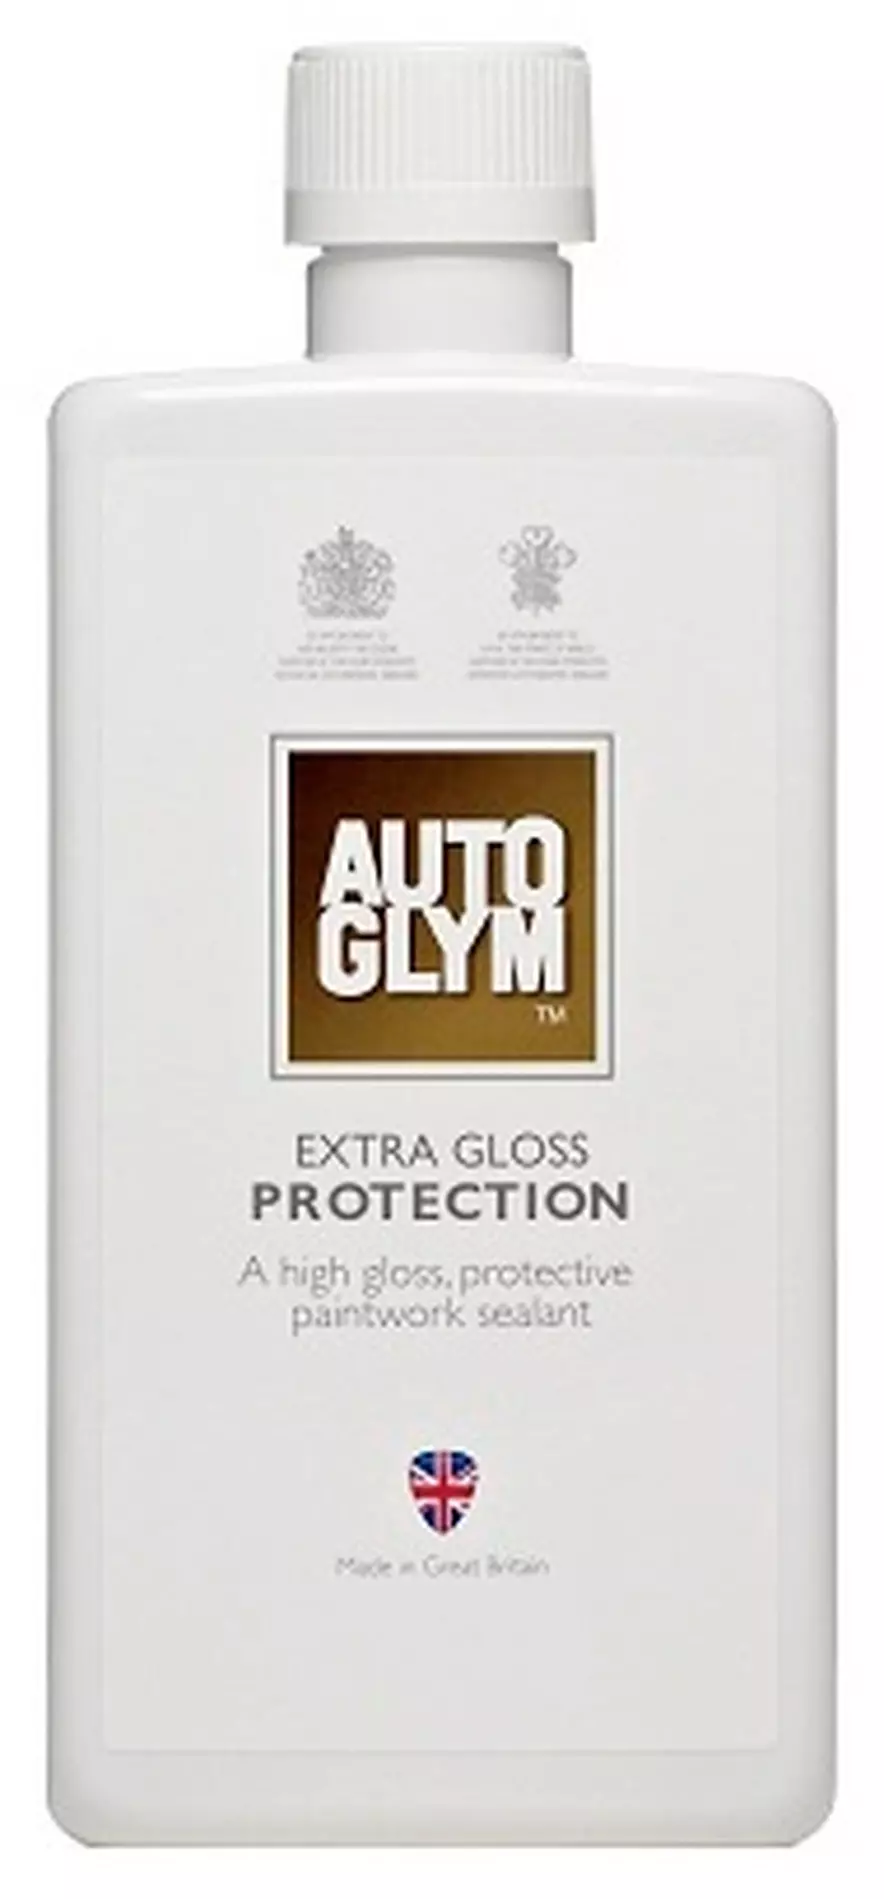 Autoglym Extra Gloss Protection test - EN 